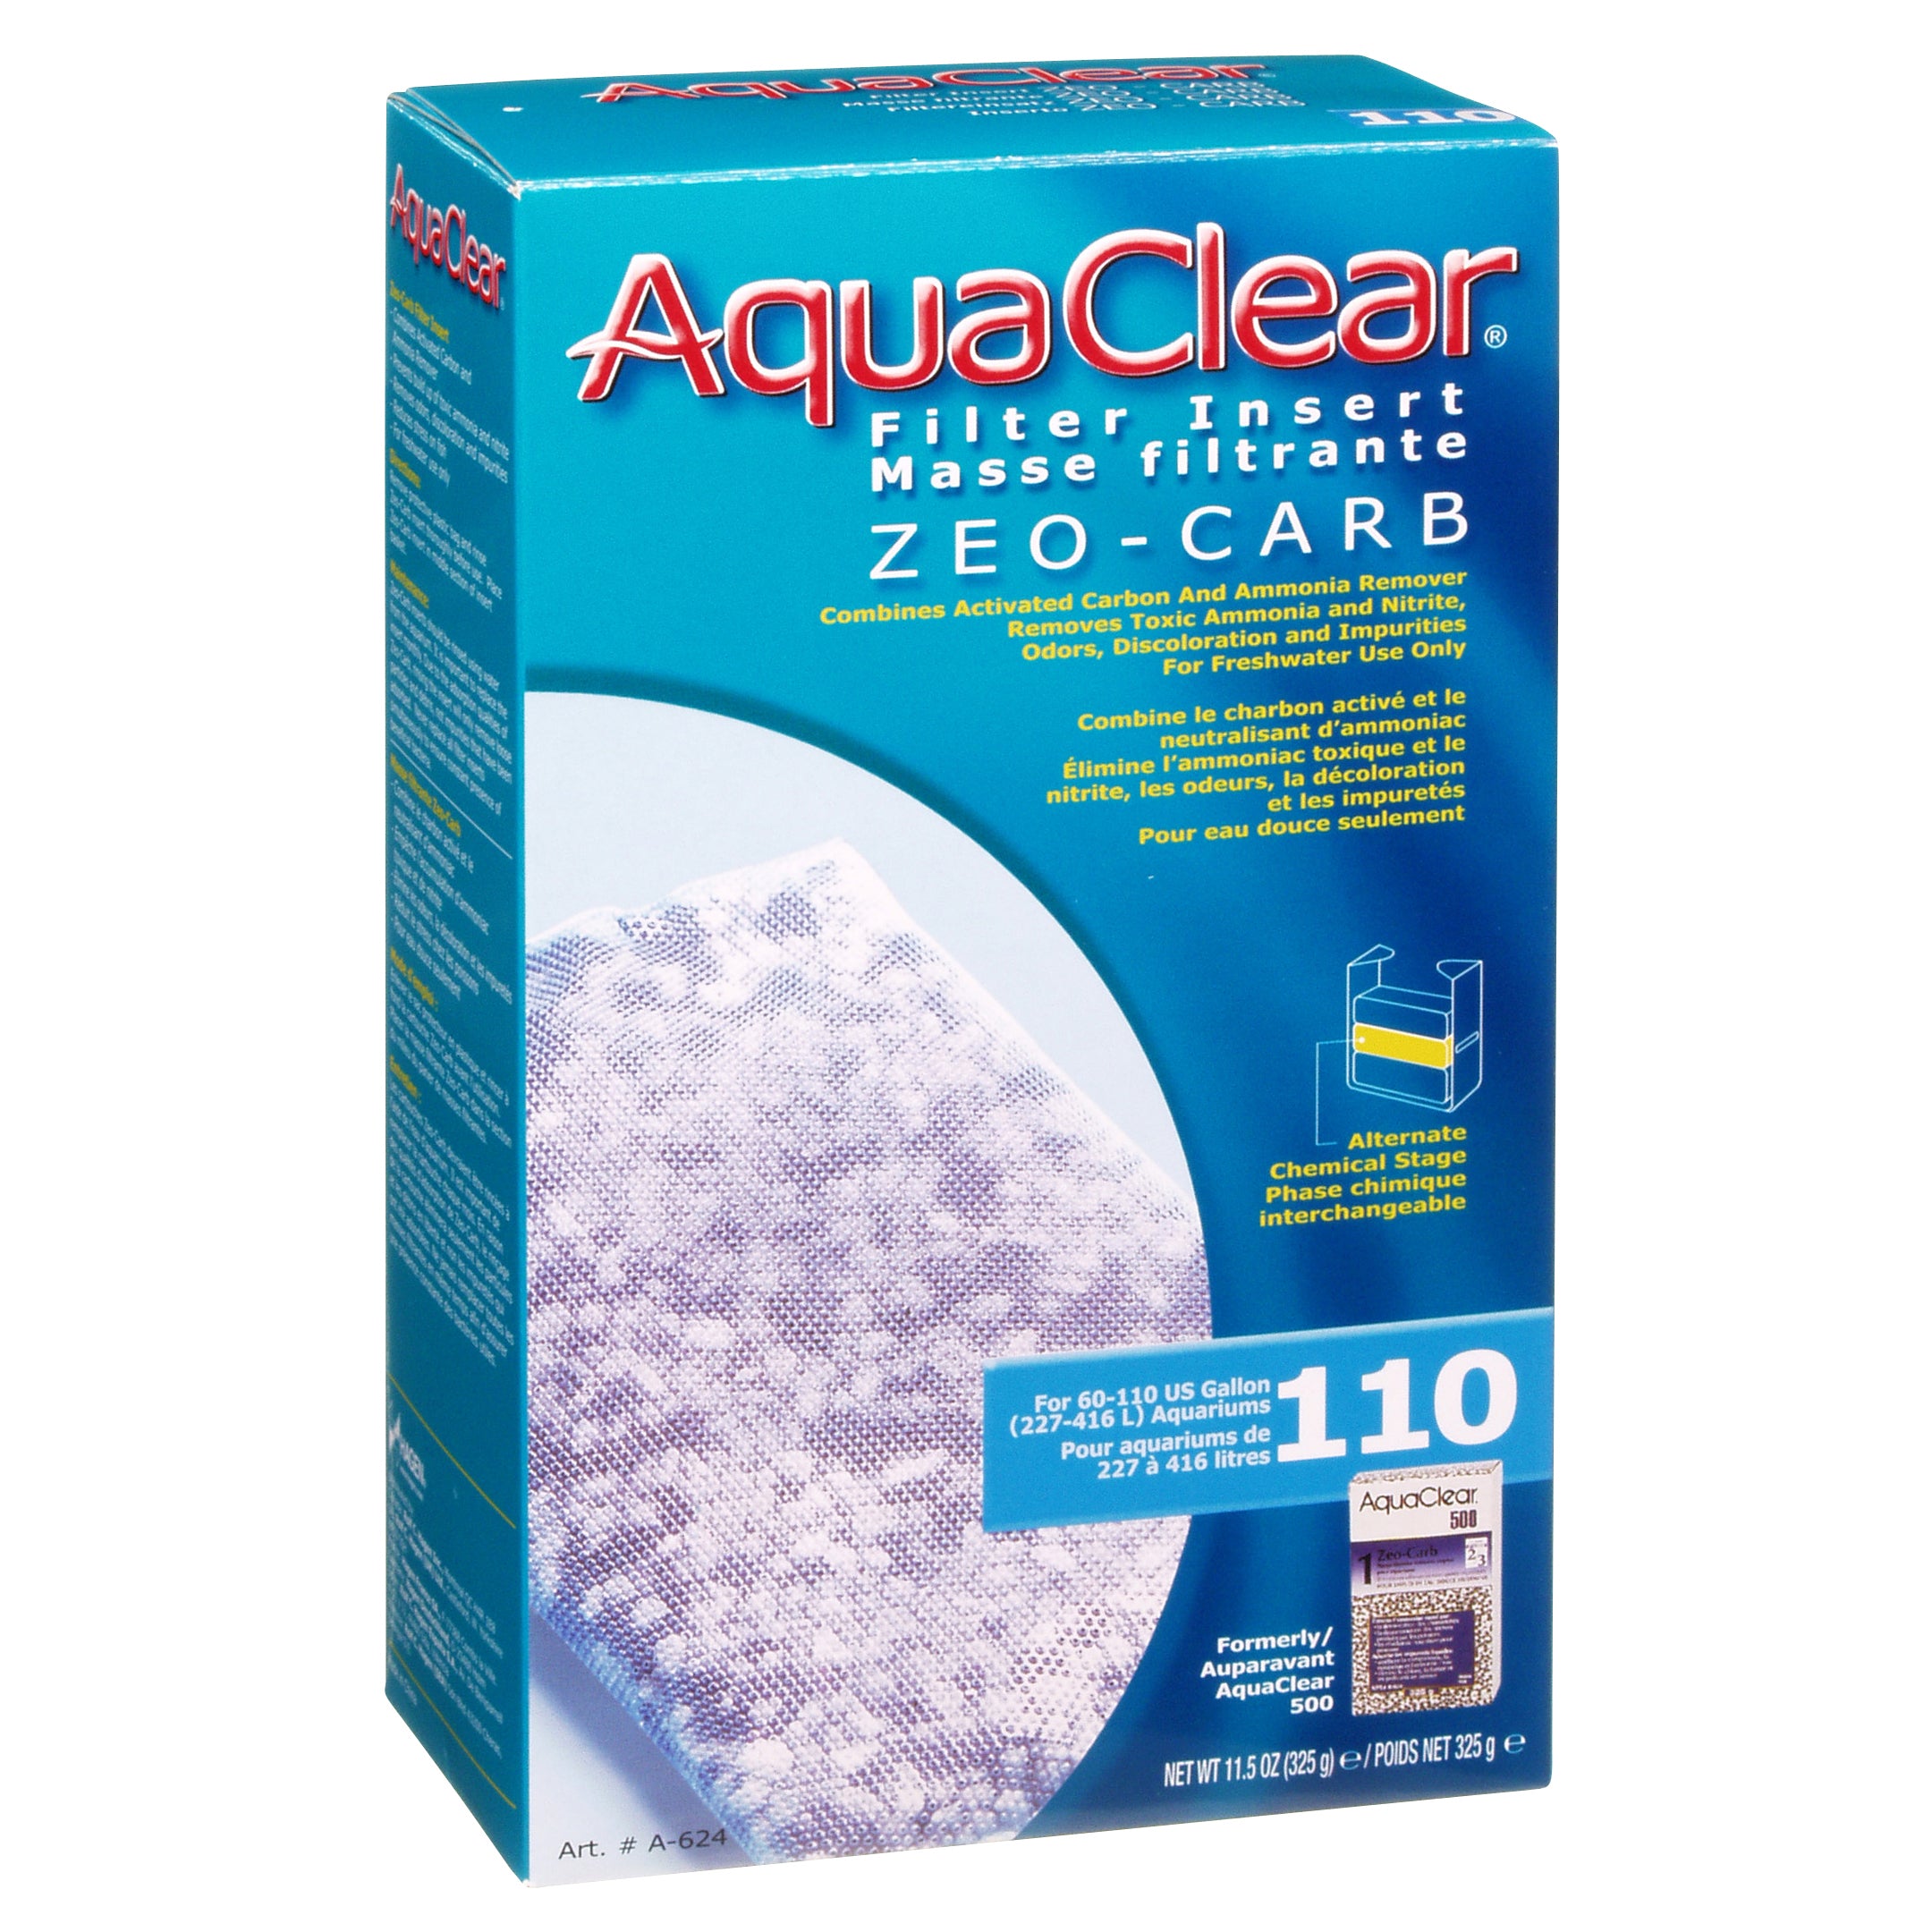 AquaClear Zeo-Carb Filter Insert